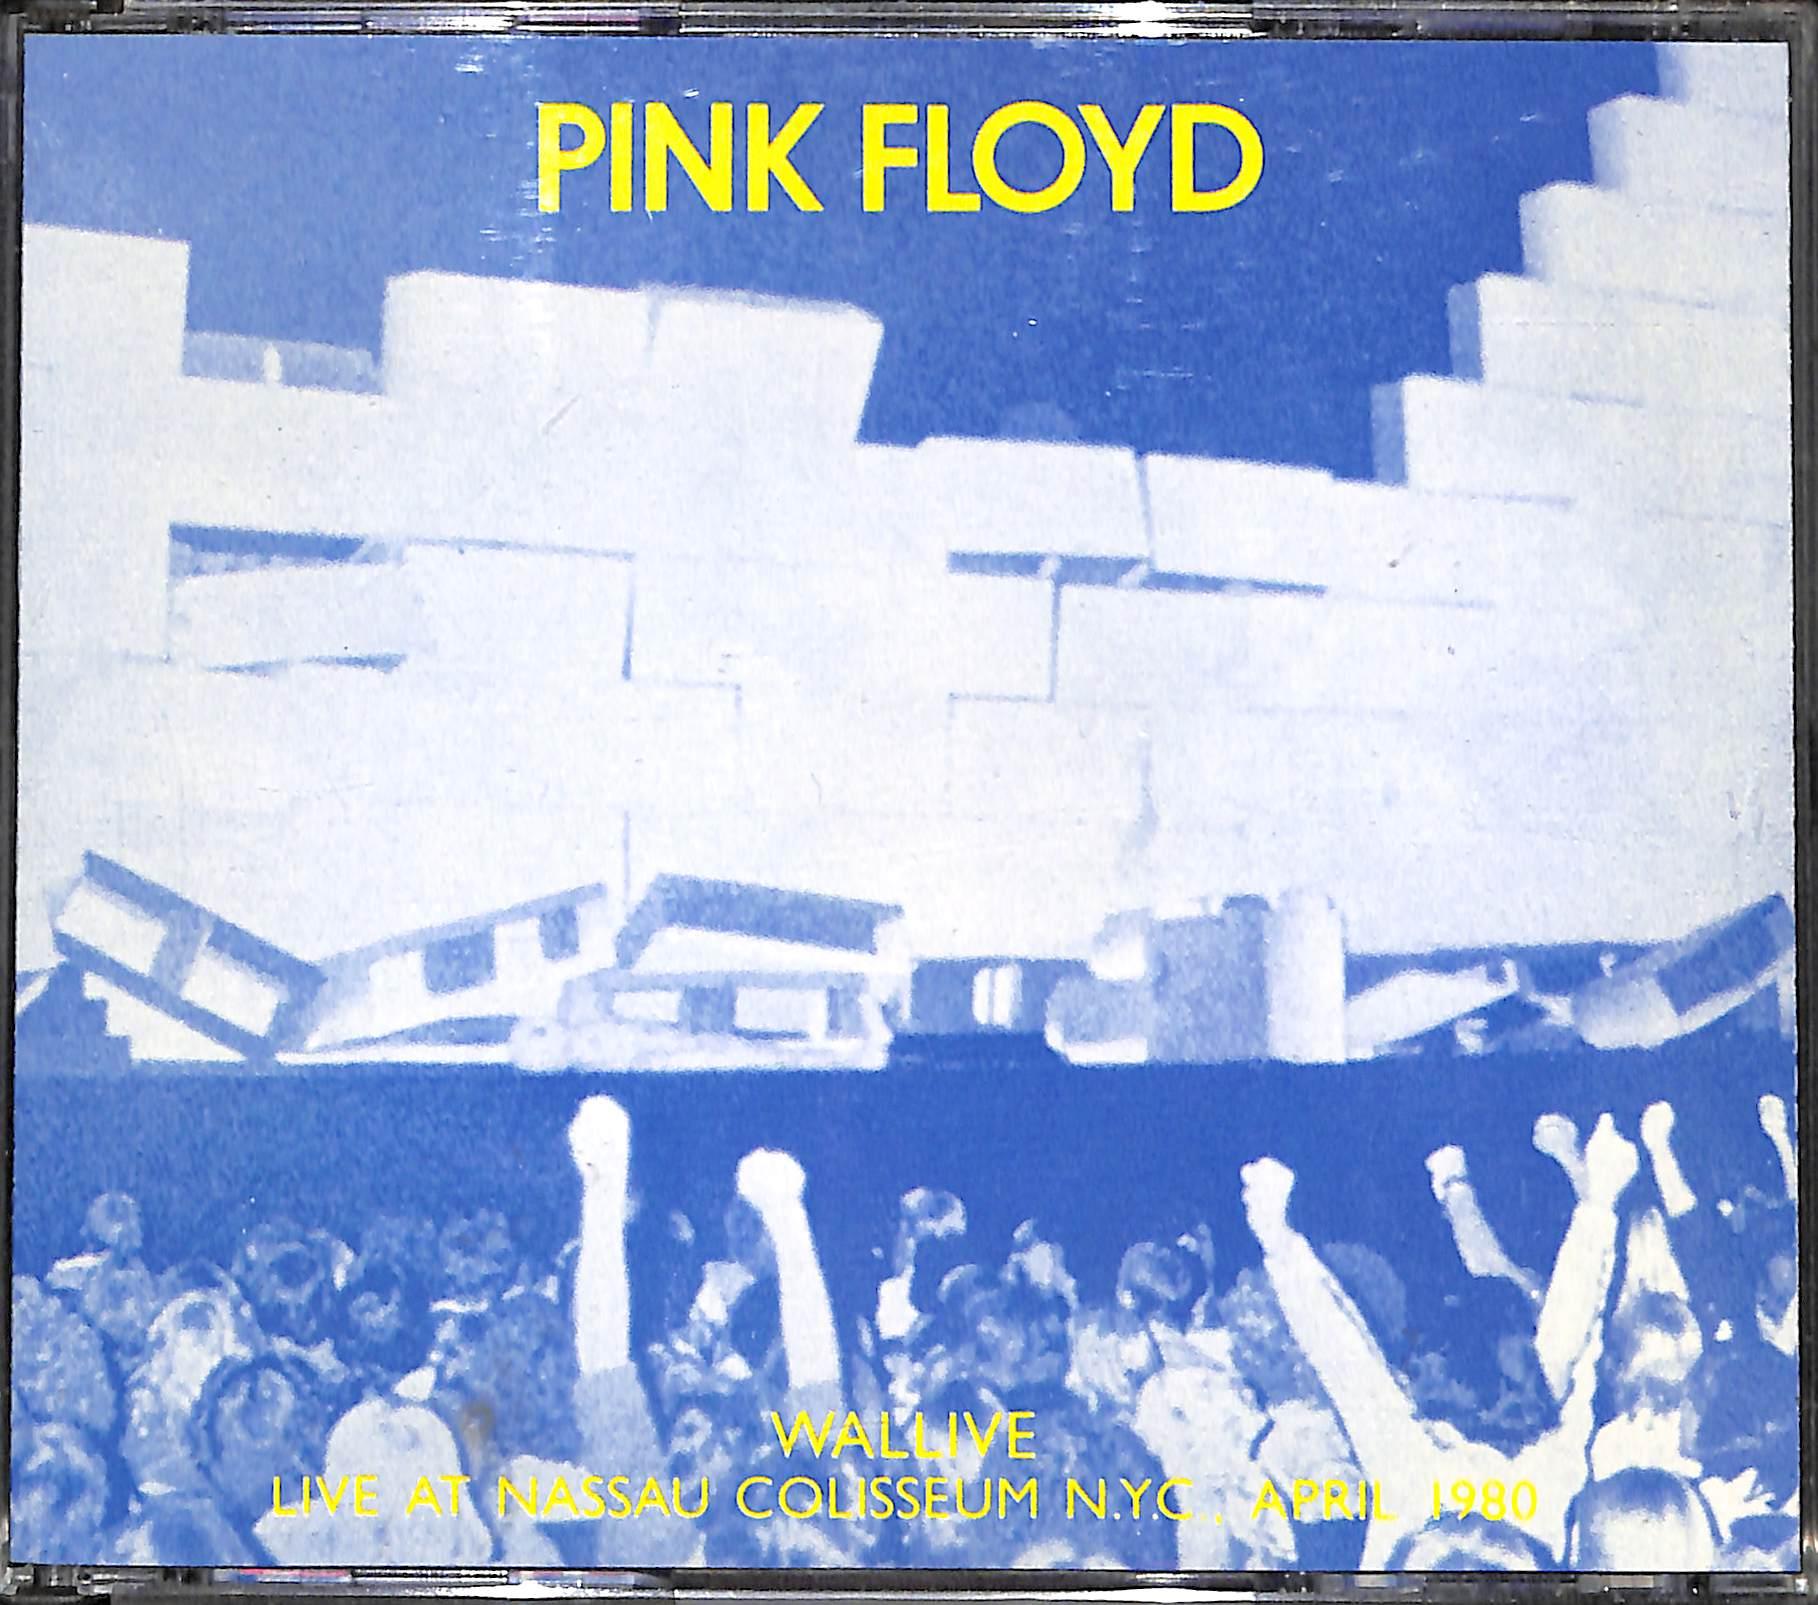 83331 Cd - Pink Floyd - Wallive: Live At Nassau Colisseum N.Y.C., April 1980